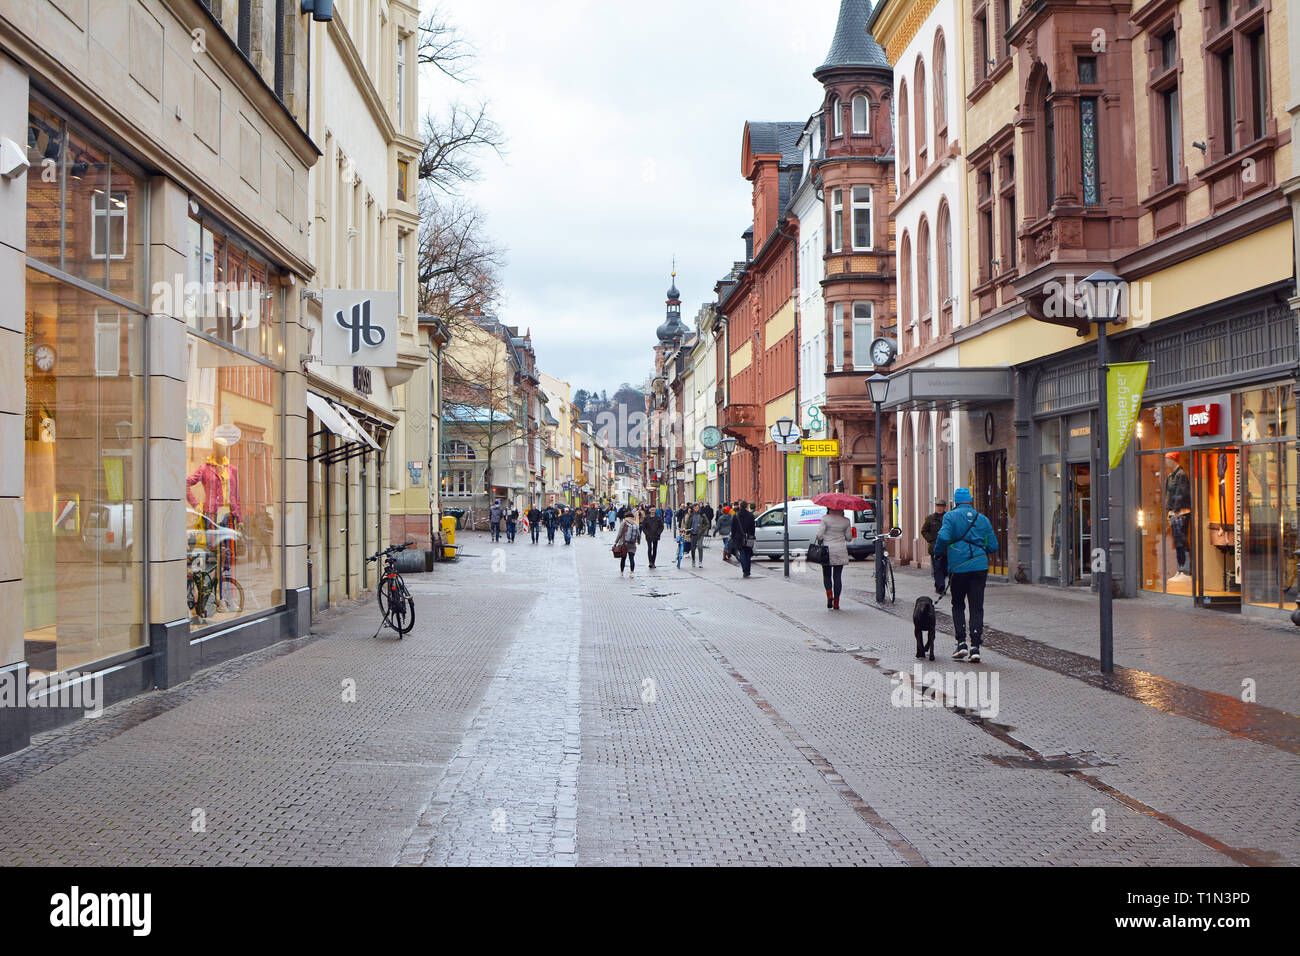 Strada principale con diversi negozi in edifici vecchi e poche persone nel centro storico della città in un giorno di pioggia in Heidelberg, Germania Foto Stock